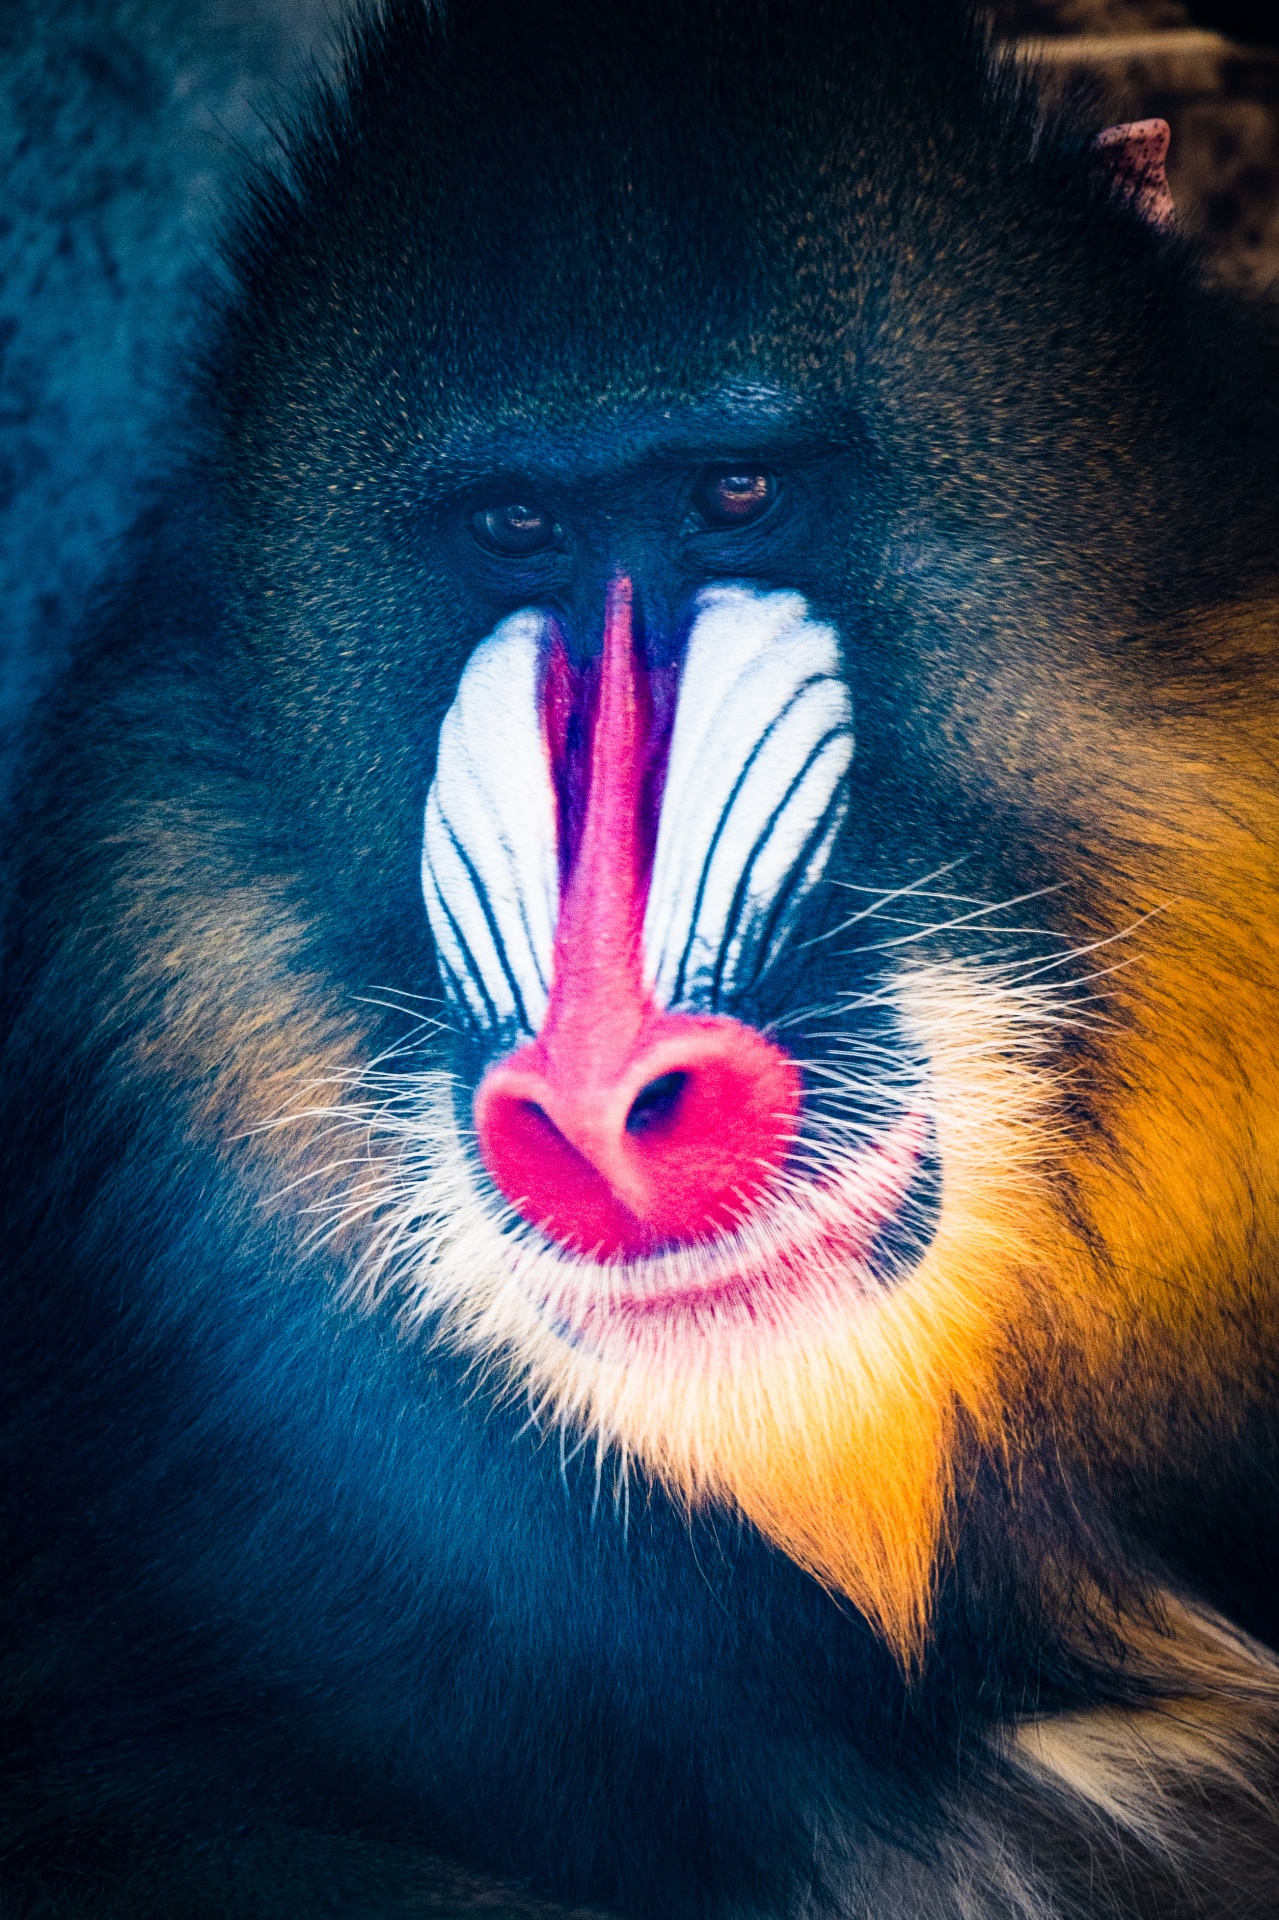 Colorful mandrill portrait